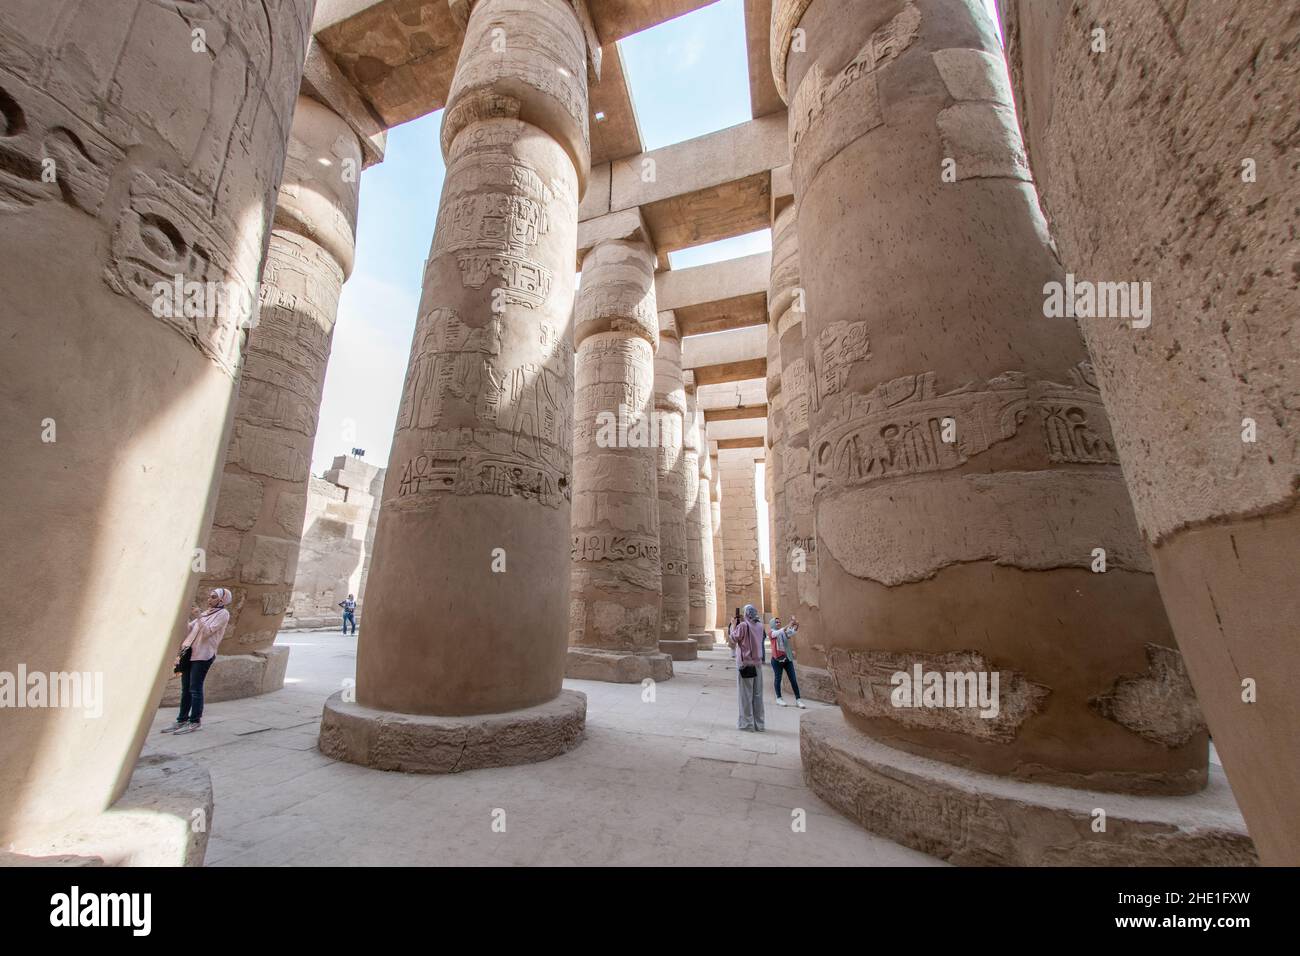 Karnak Tempel, eine berühmte archäologische Stätte, bekannt für seine gut erhaltenen Steinsäulen und Schnitzereien in Ägypten. Stockfoto